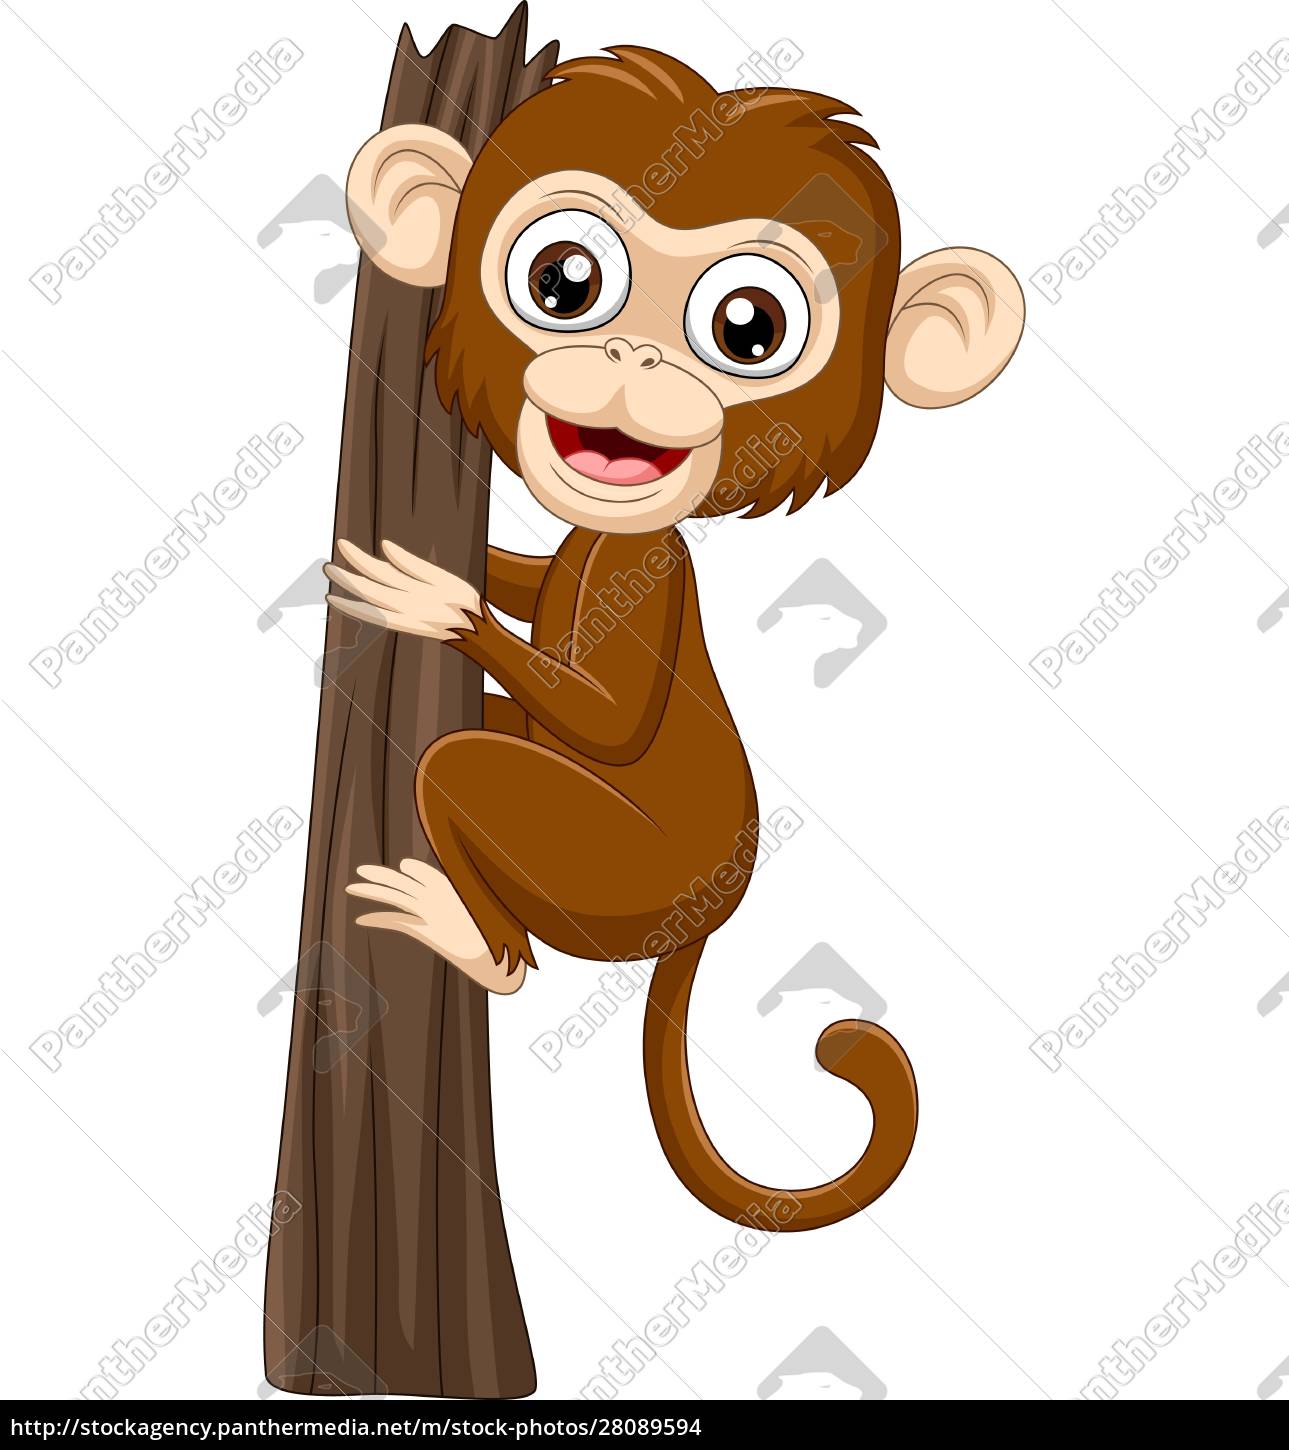 Macaco EngraÃ§ado De Desenho Animado Em Um Galho De Ã¡rvore